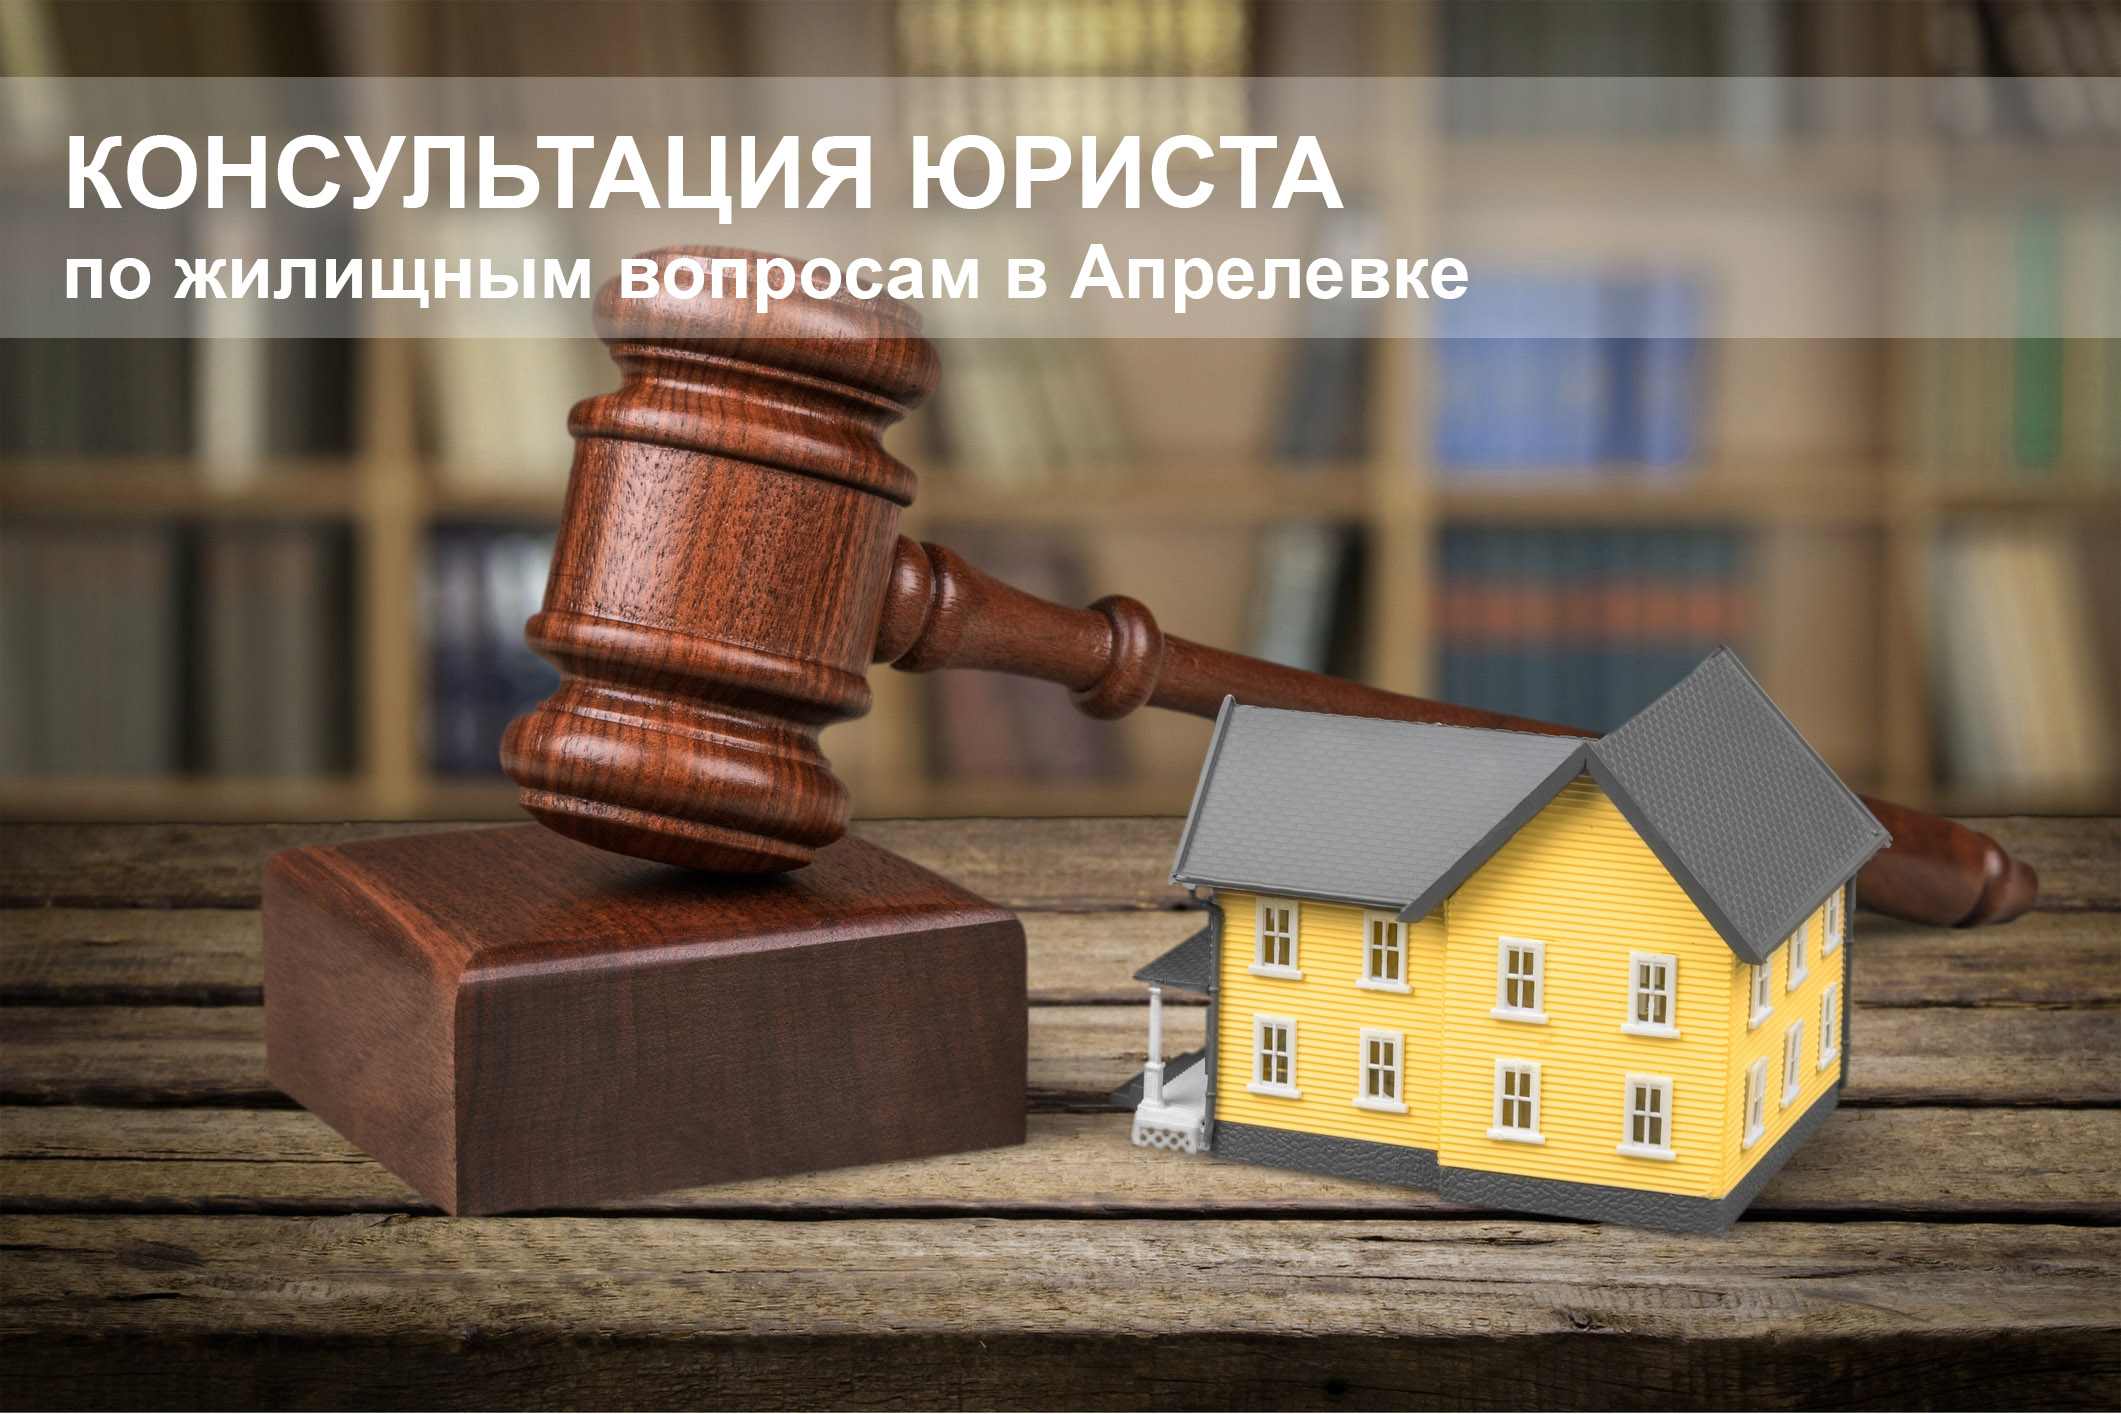 Консультация юриста по жилищным вопросам в Апрелевке